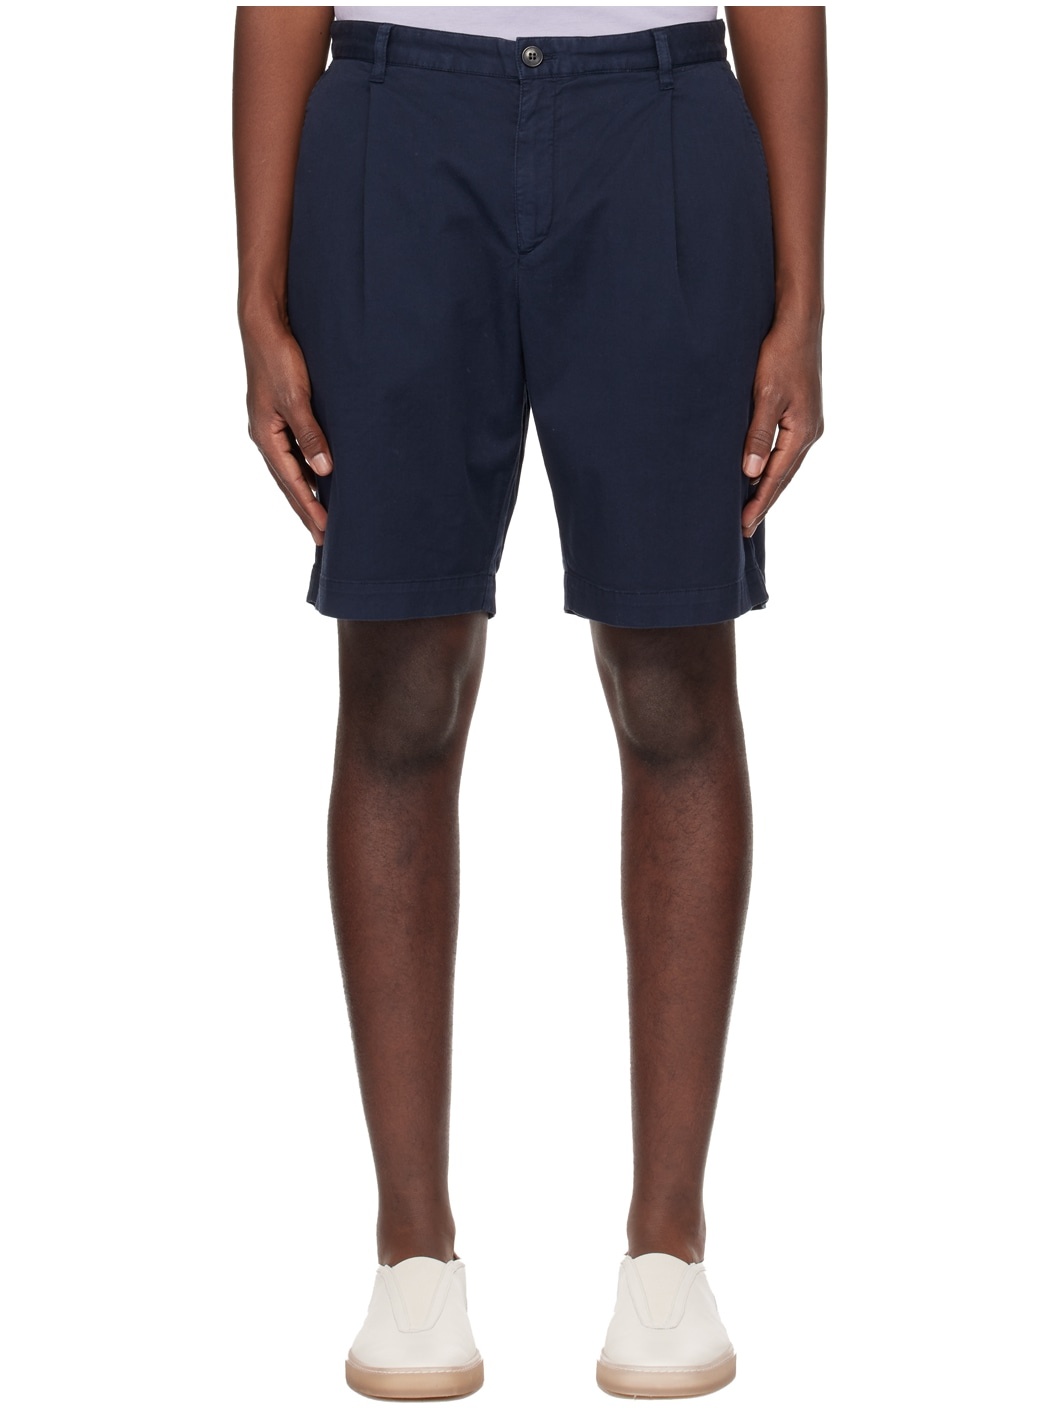 Navy Pleated Shorts - 1